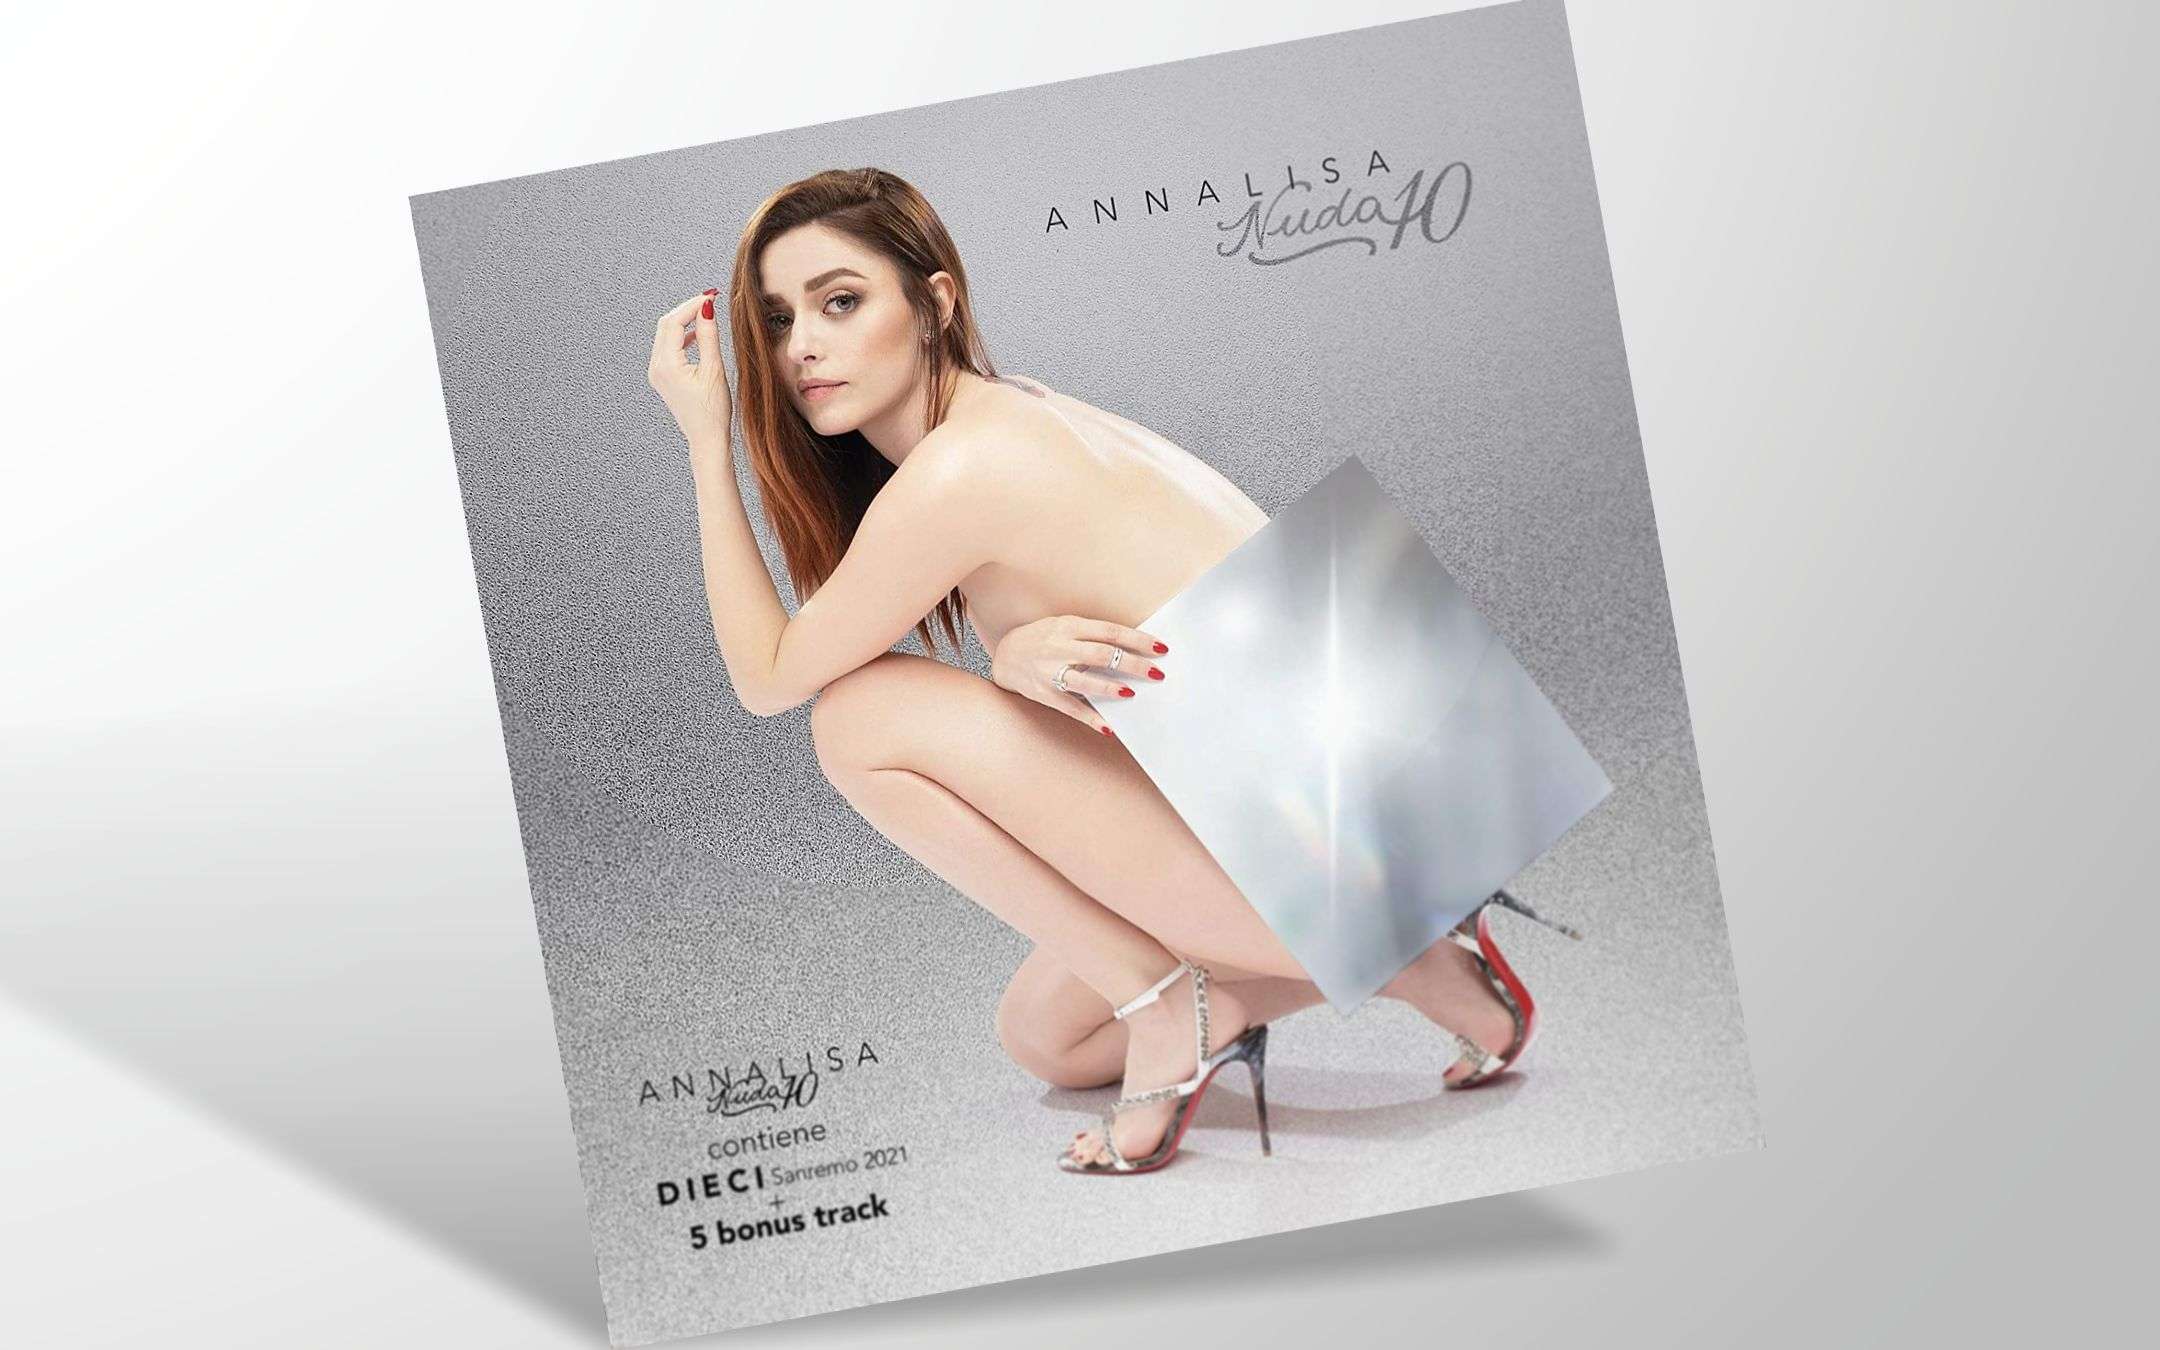 Sanremo 2021 su Amazon e Alexa duetta con Morandi